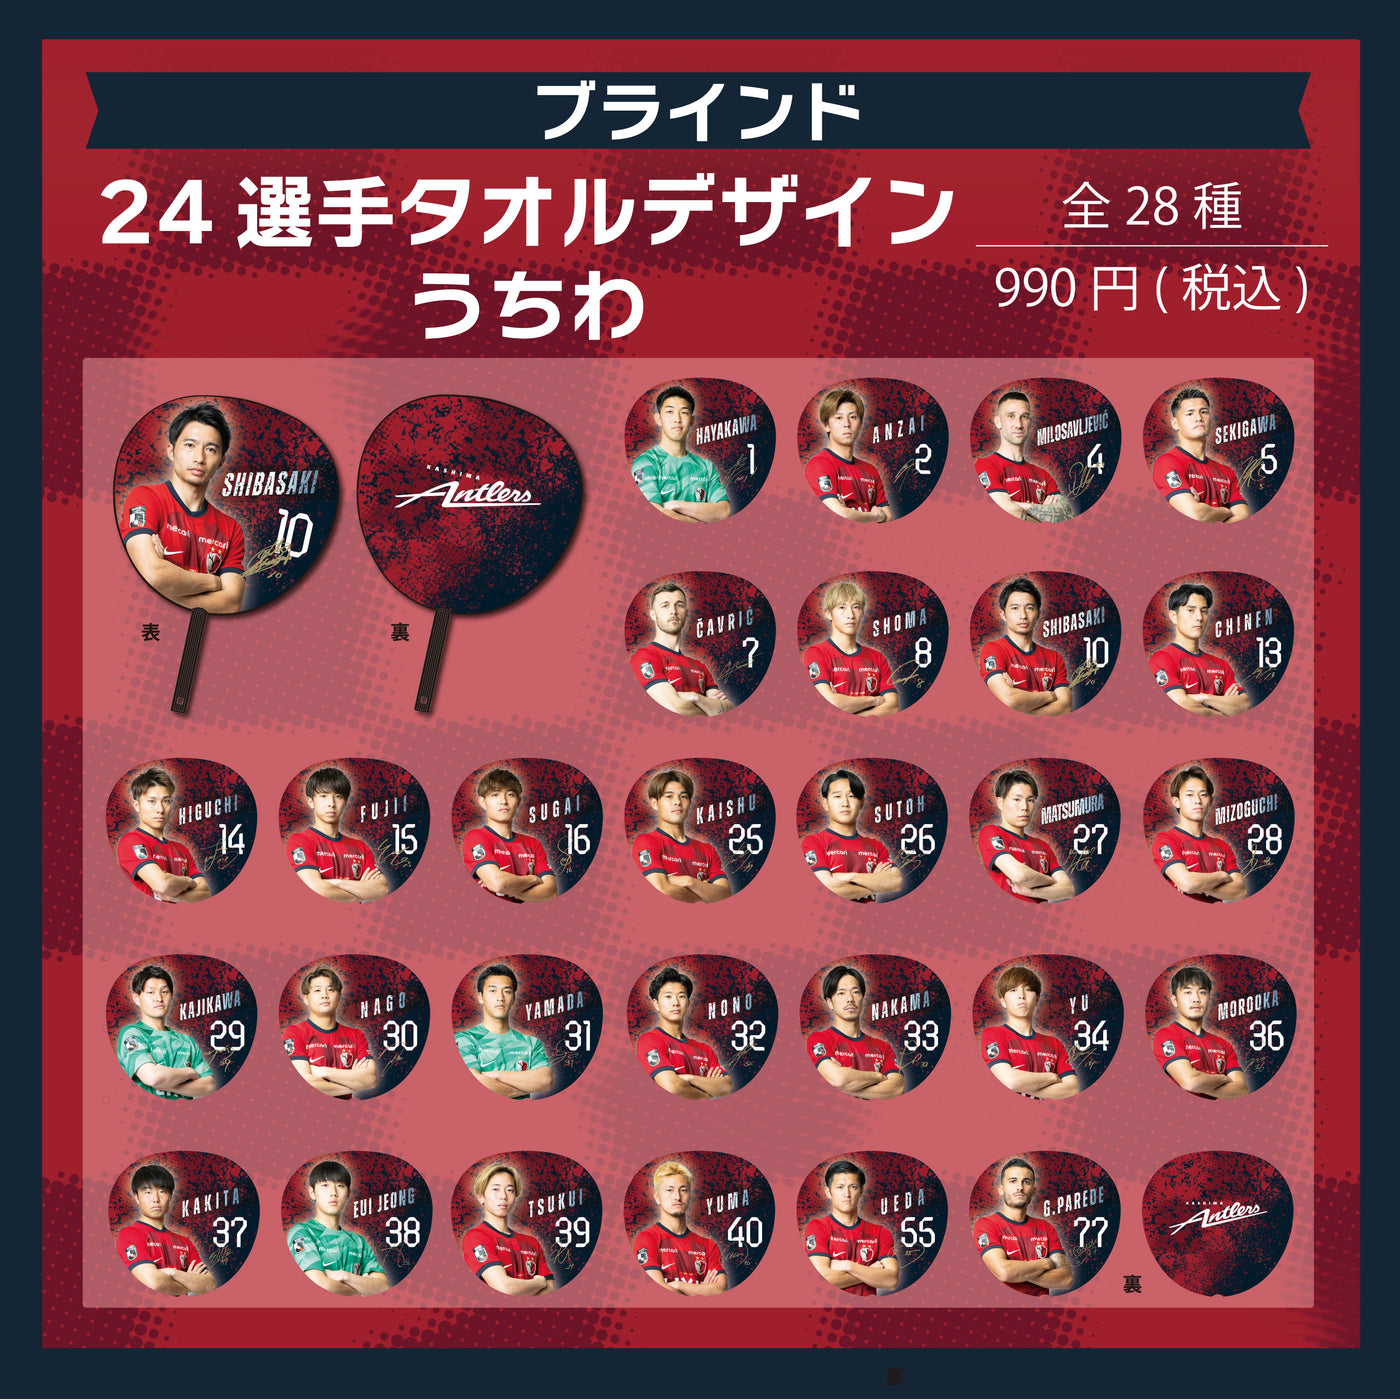 【ブラインド】24 選手タオルデザインうちわ(全28種)